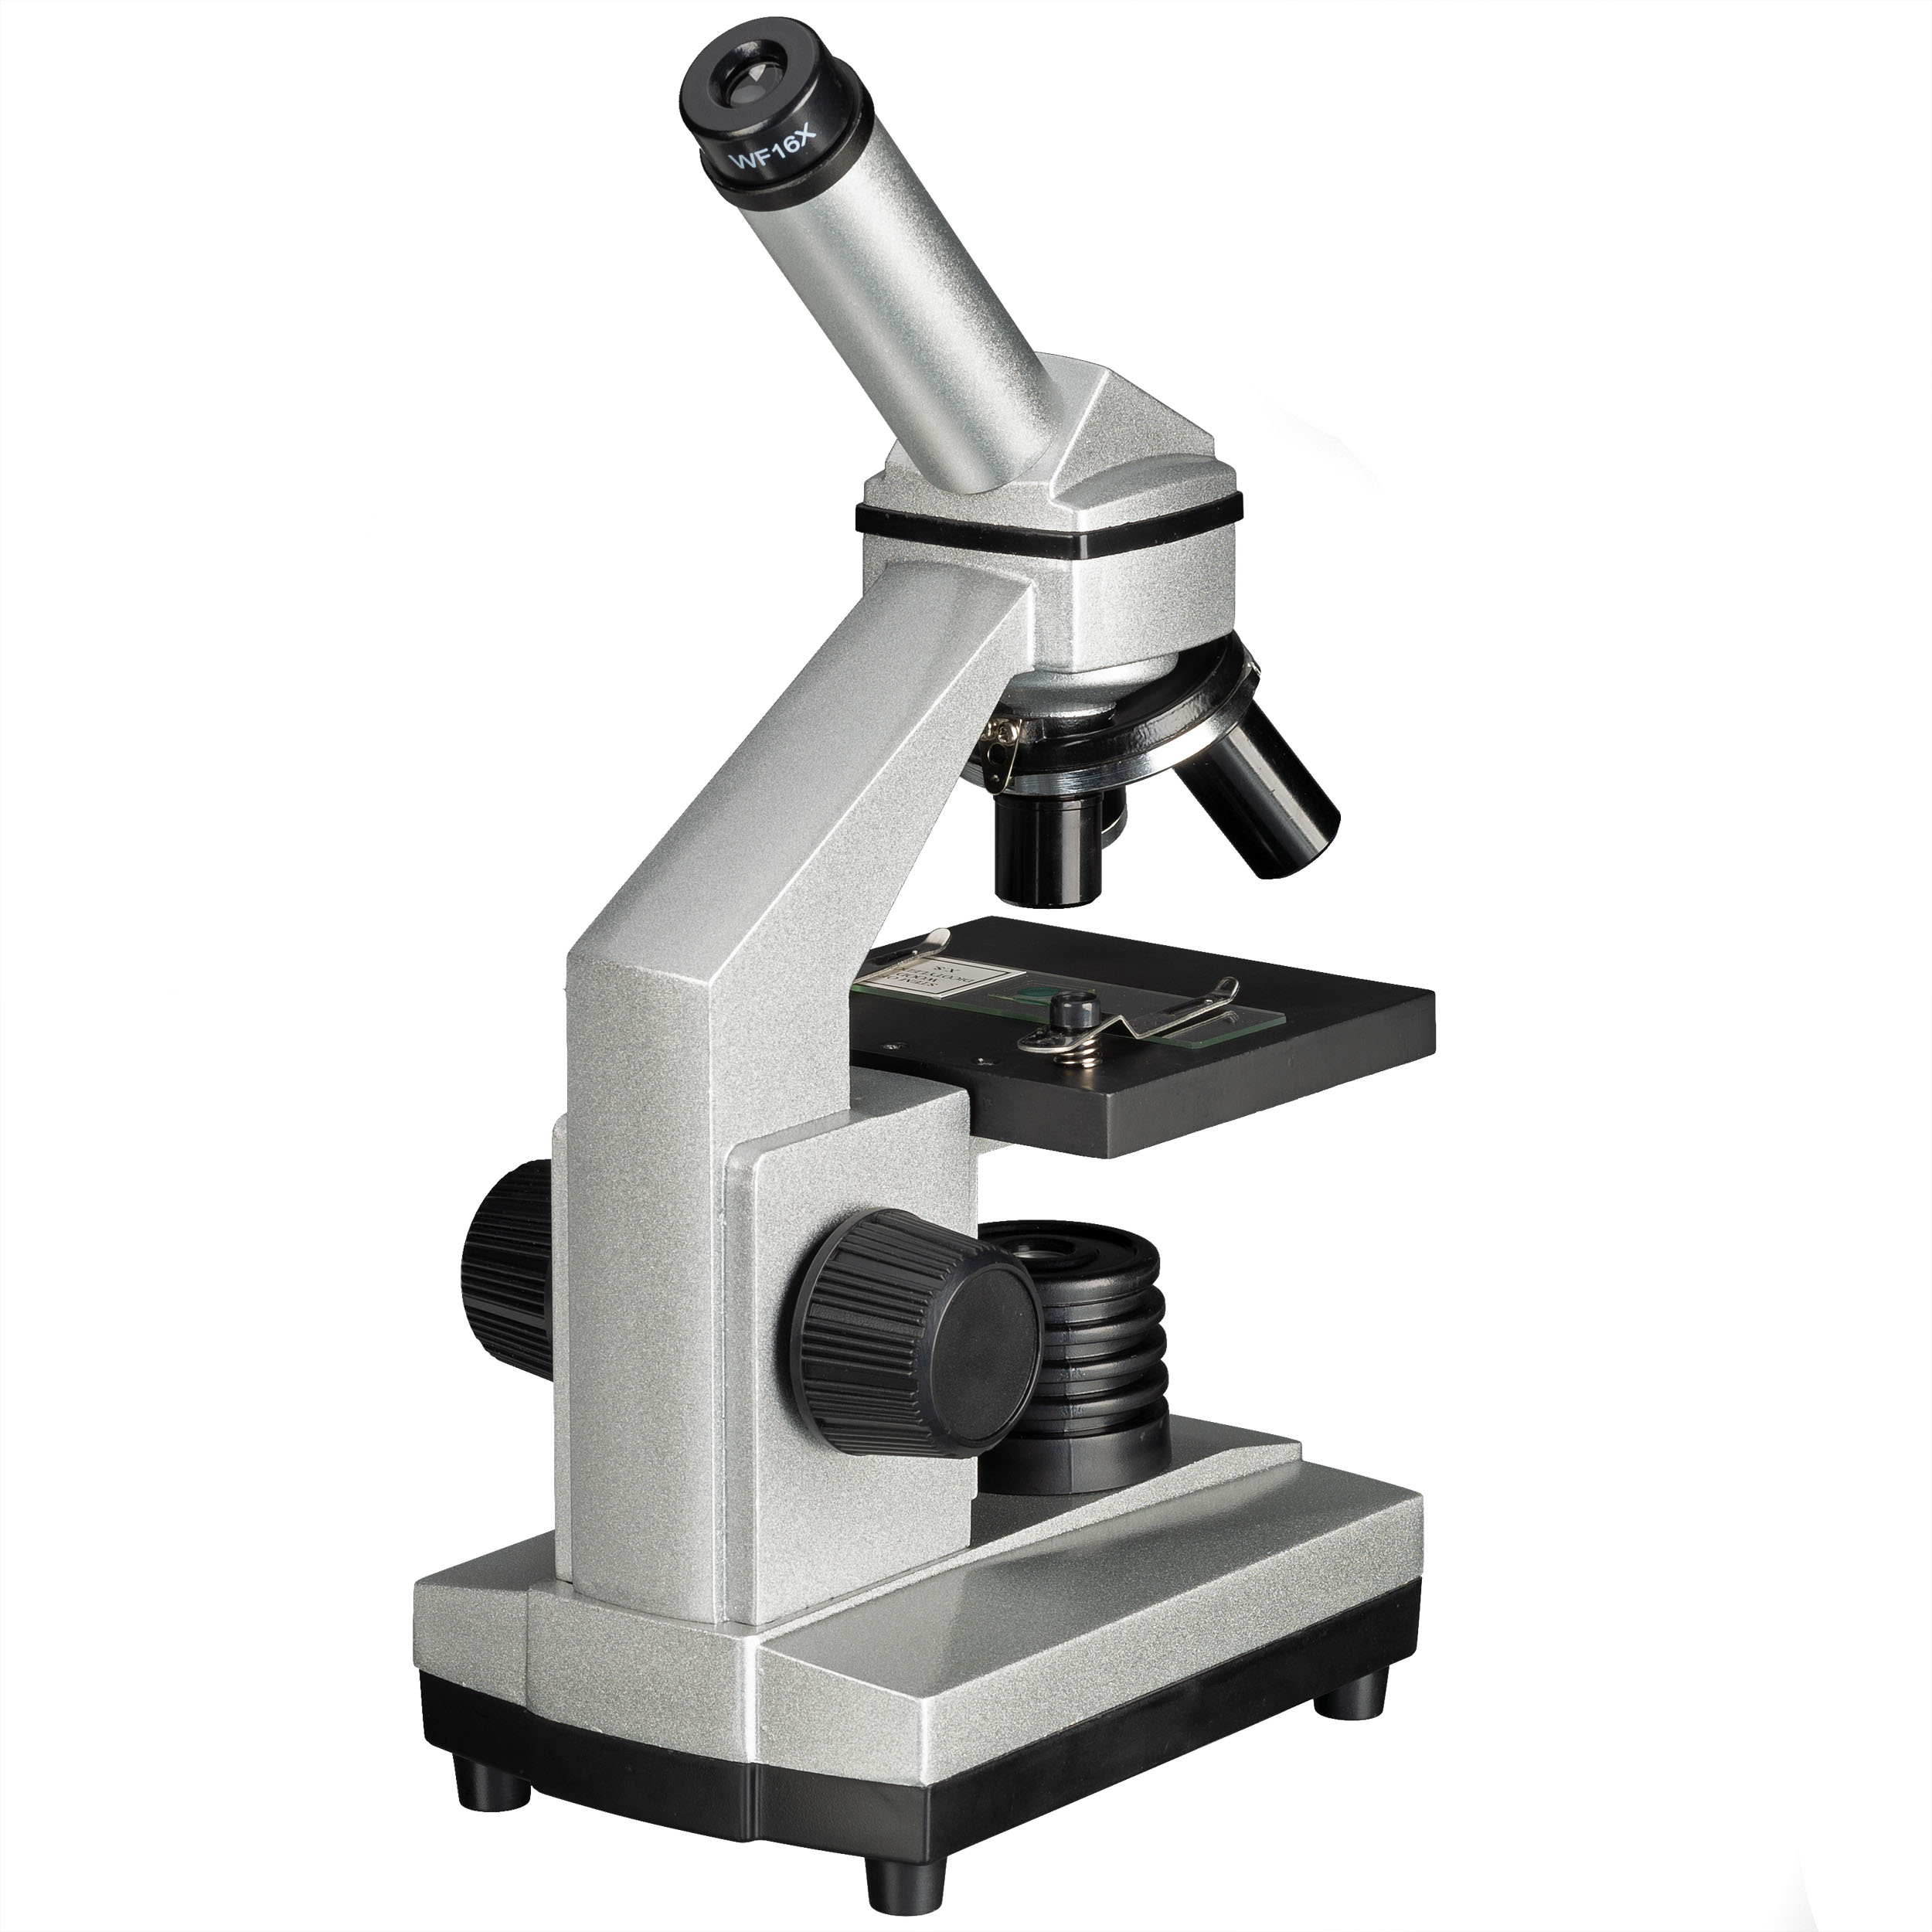 BRESSER JUNIOR Microscopio 40x-1024x con Camera oculare HD